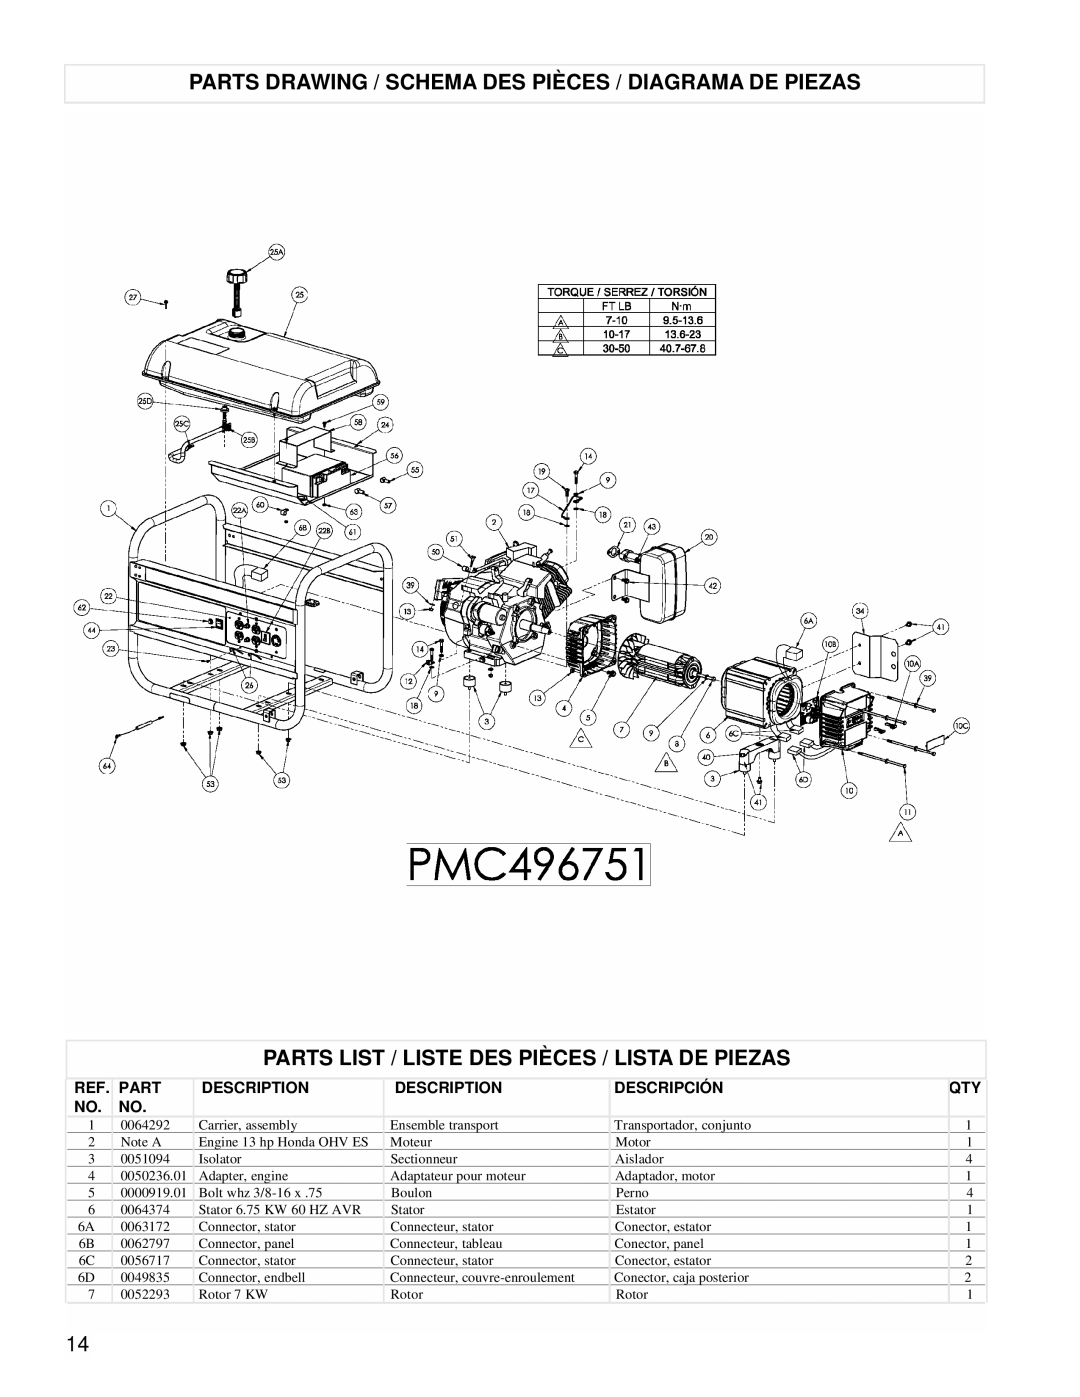 Powermate PMC496751 manual Parts List / Liste Des Pièces / Lista De Piezas, Description, Descripción 